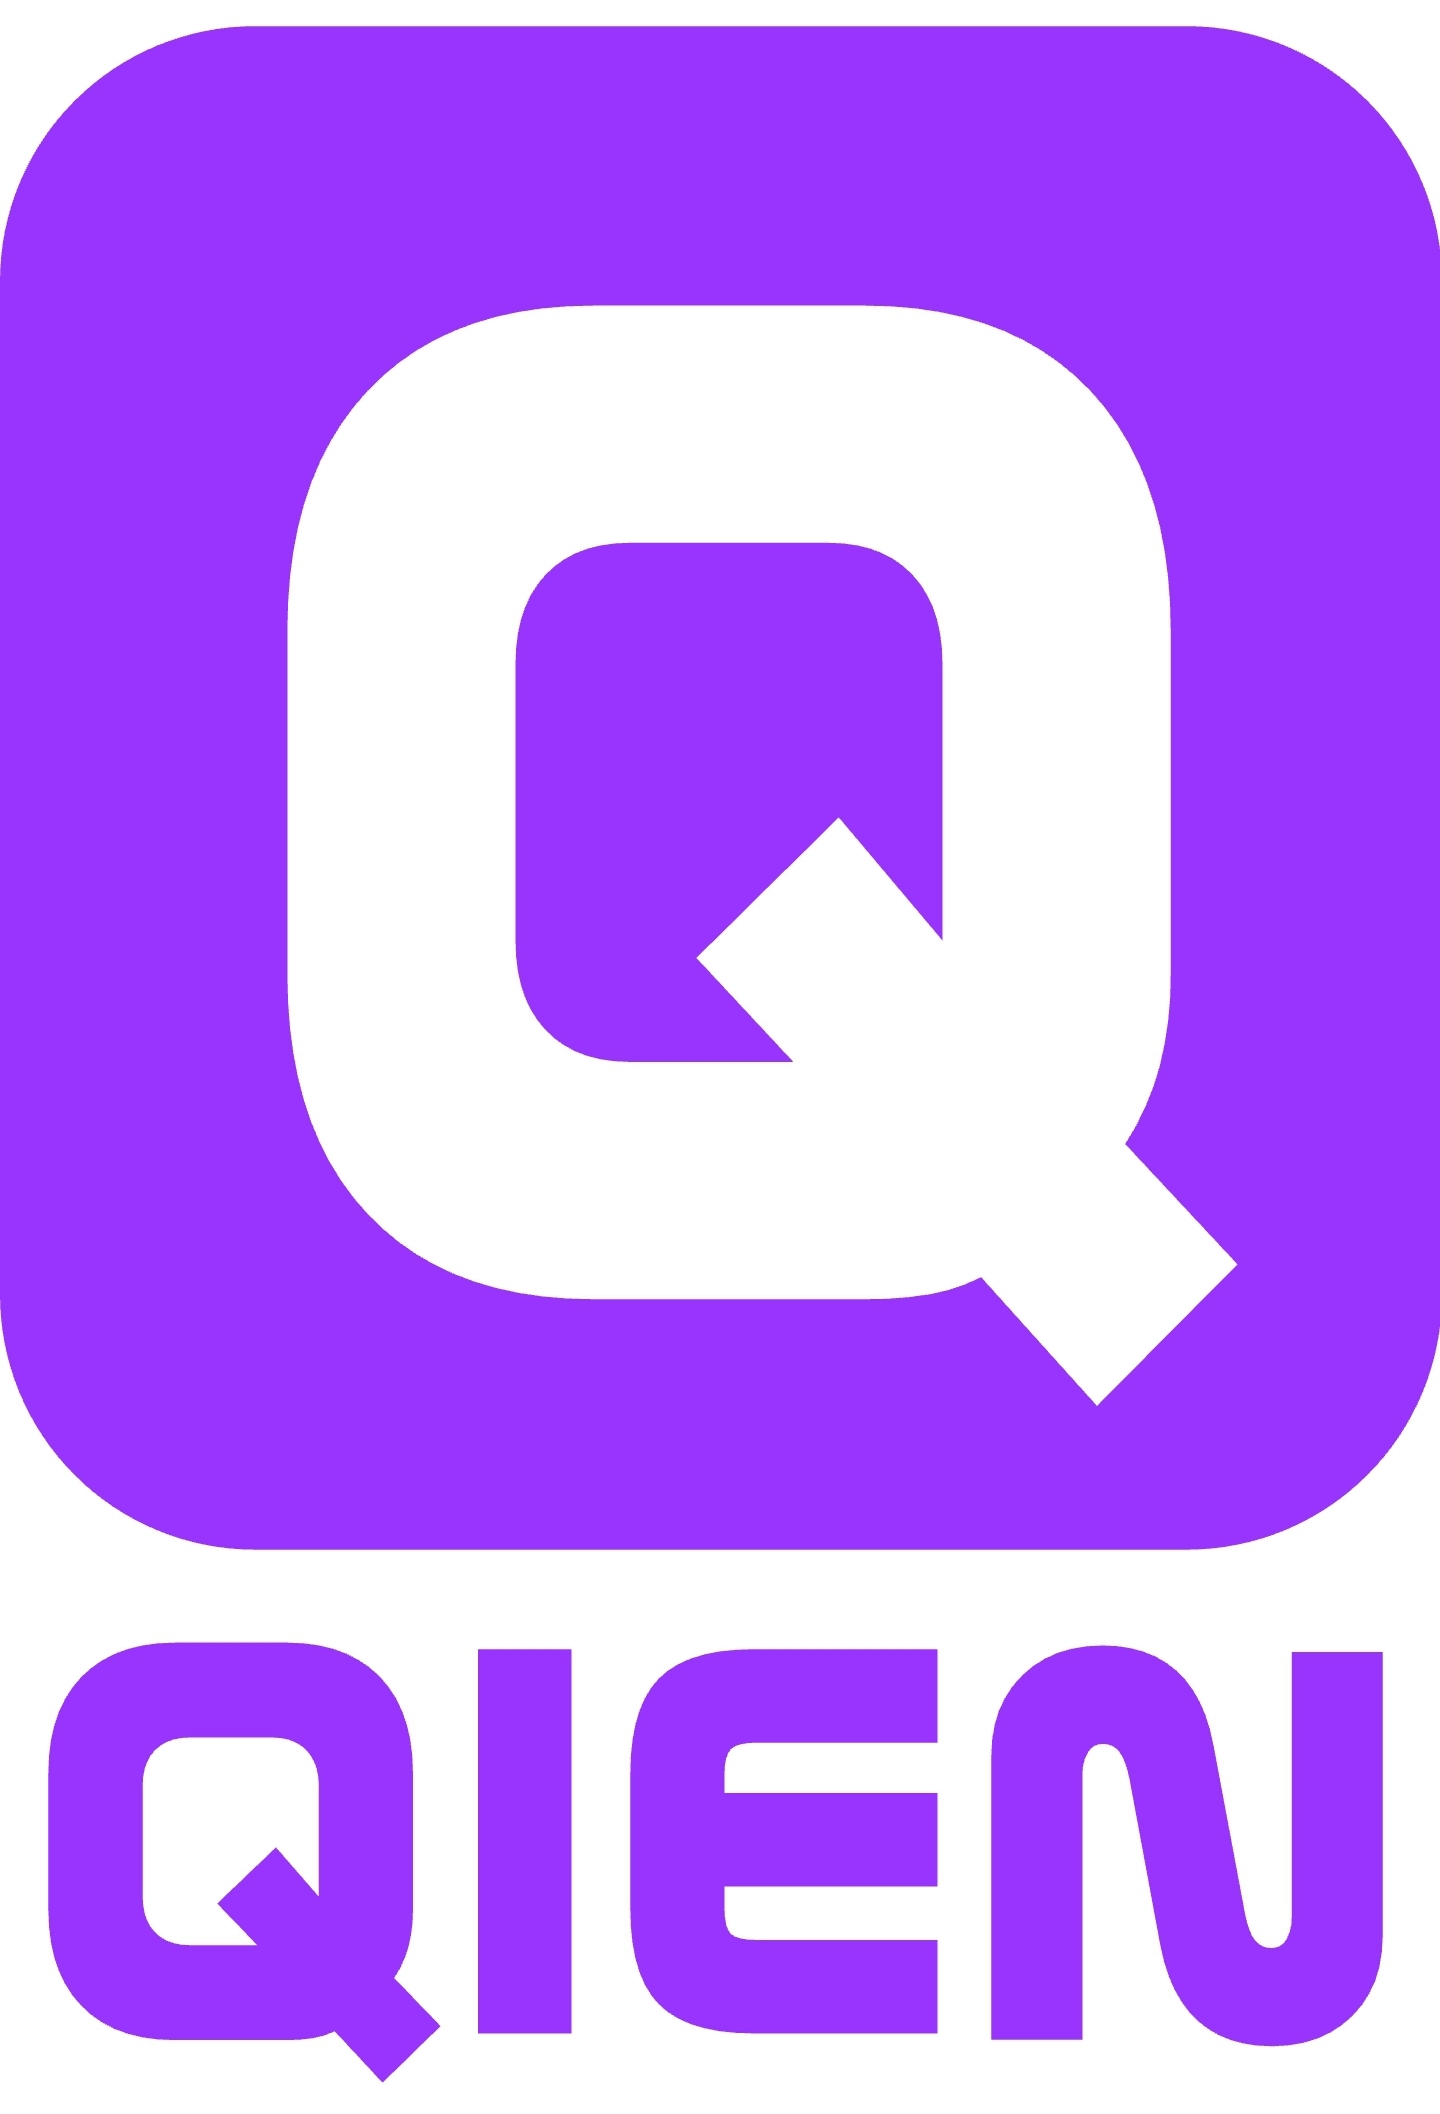 Qien